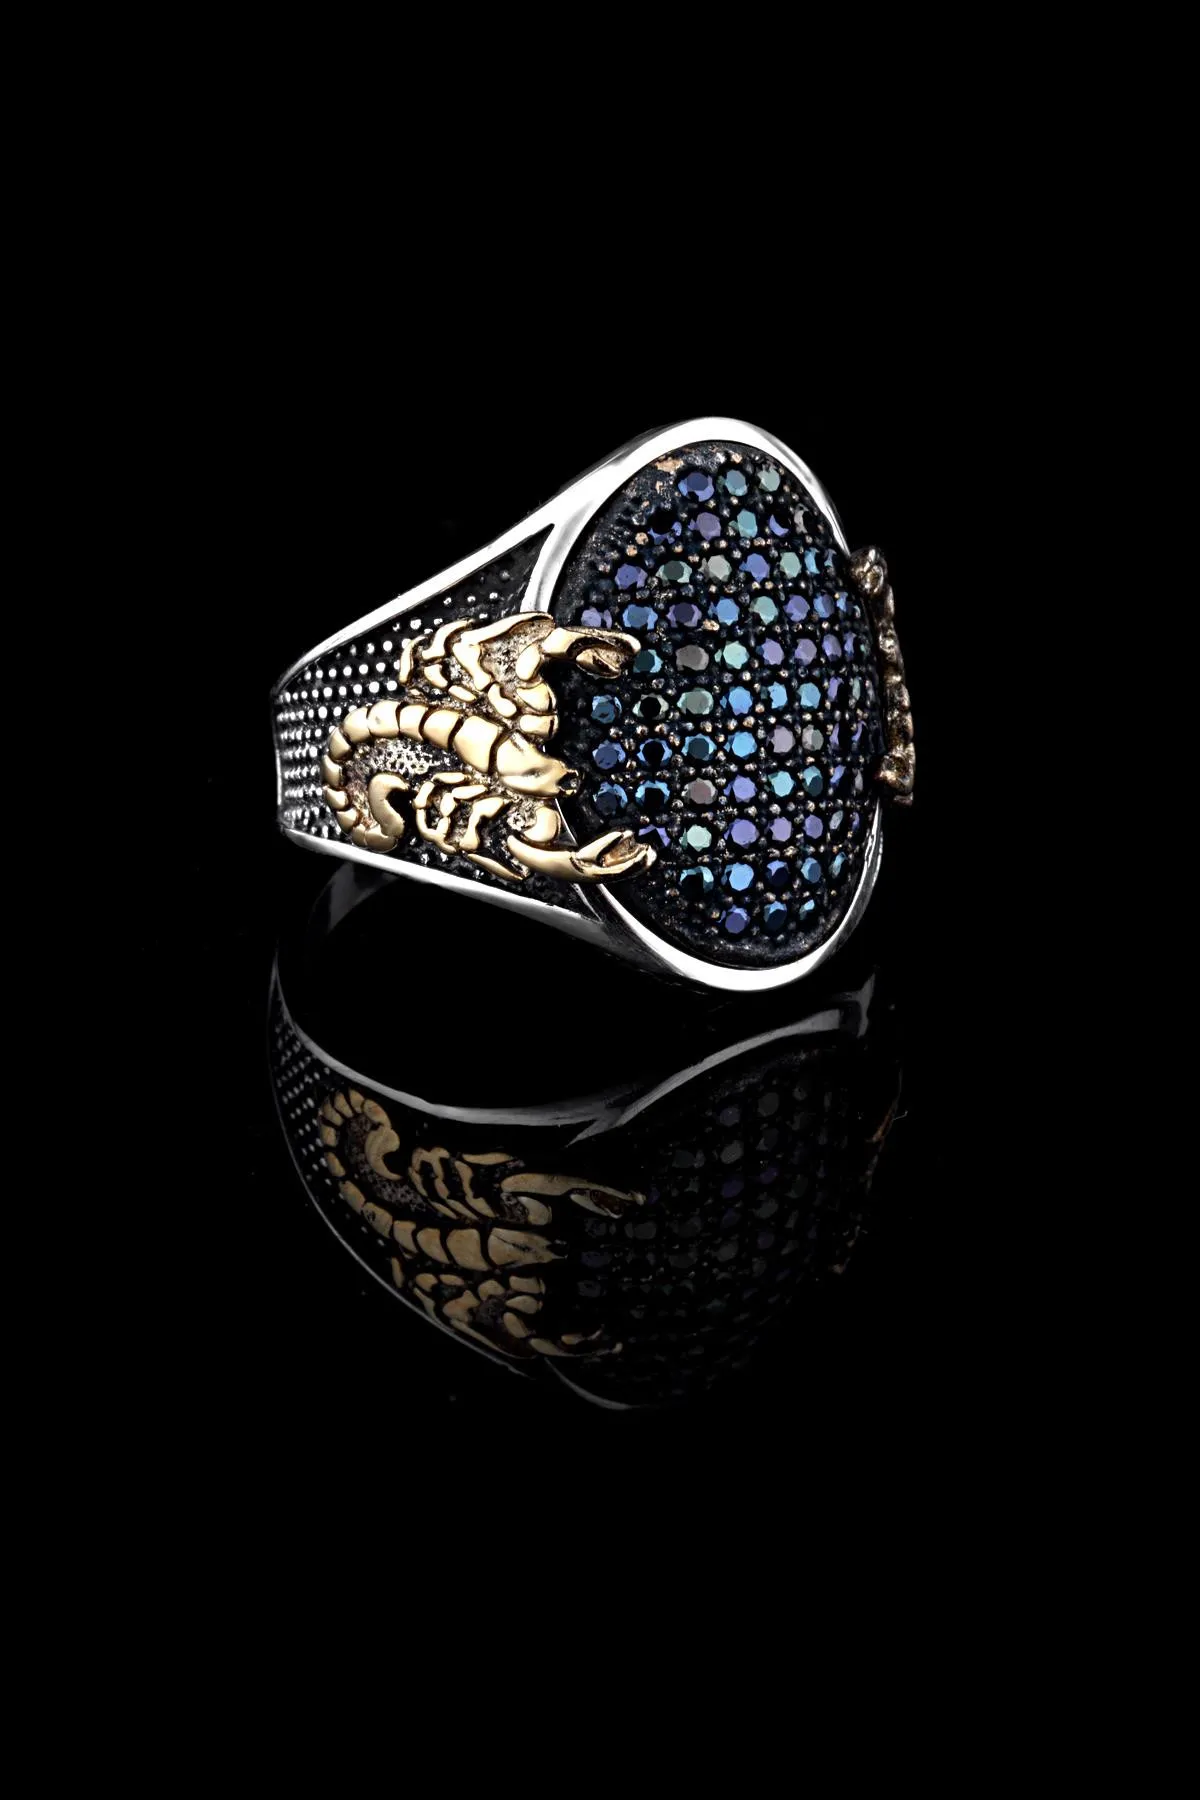 Мужское кольцо - cкорпион (серебро) rch2219 Larin Silver#1